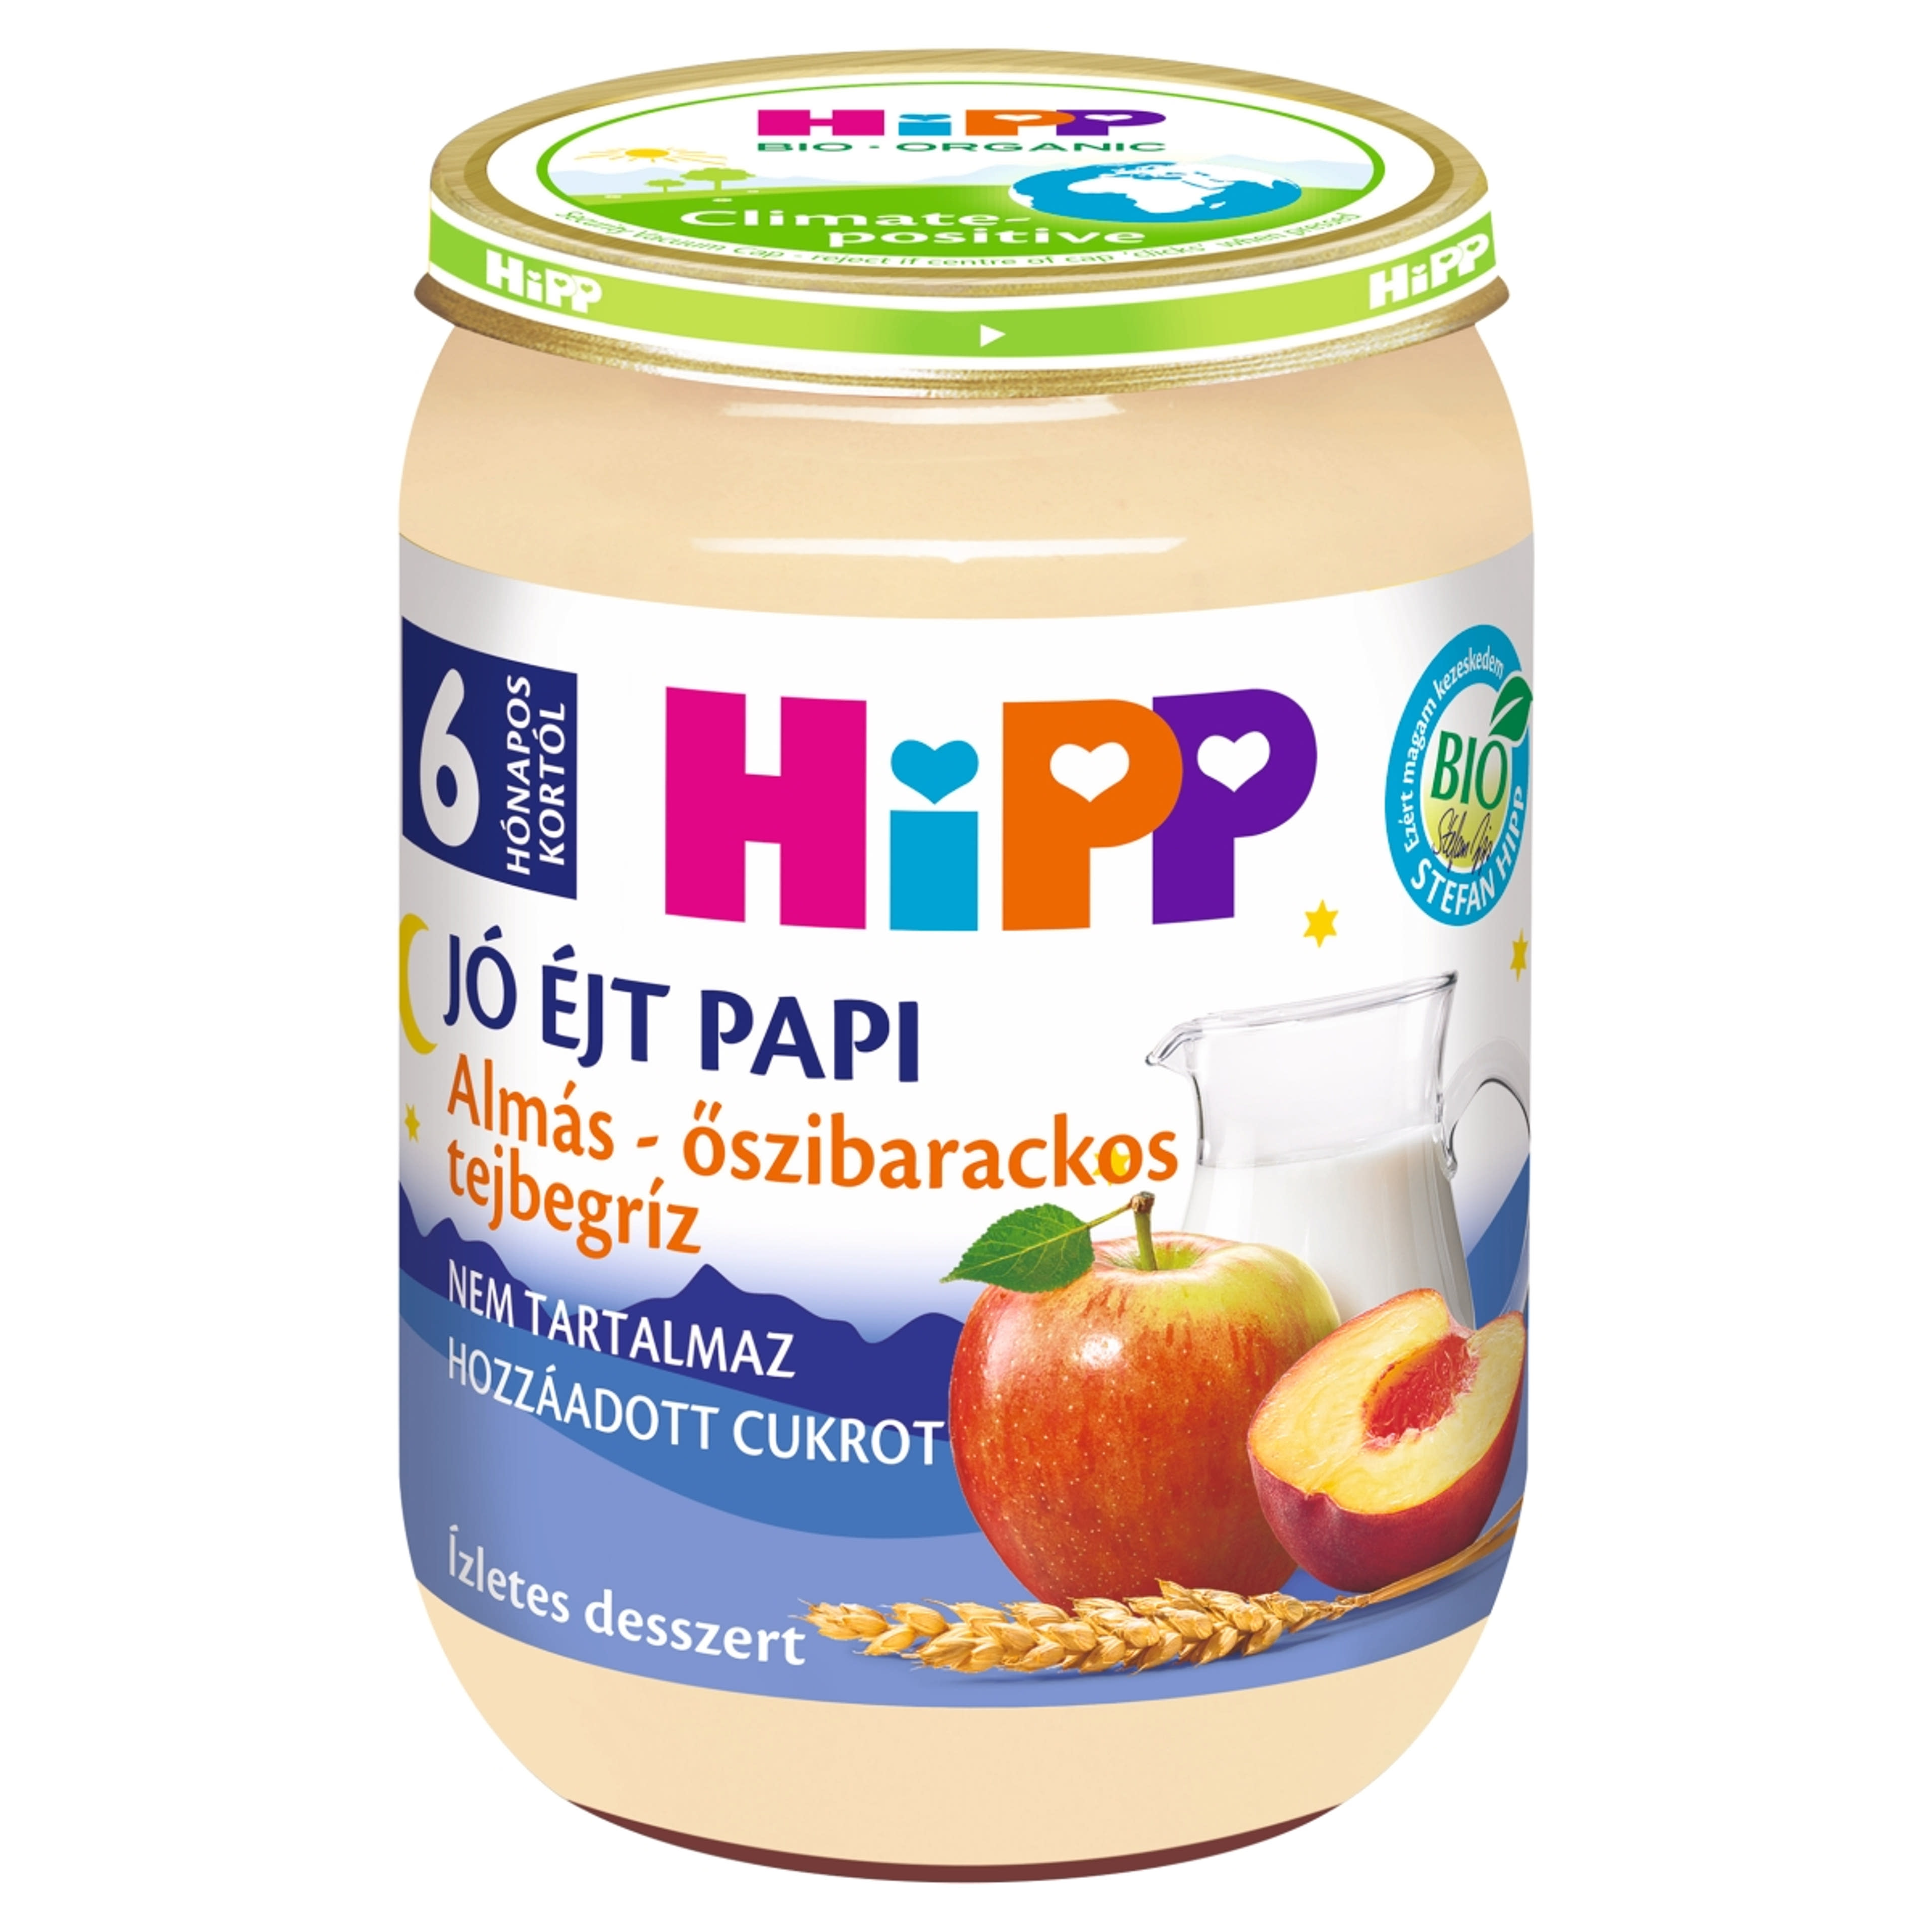 Hipp Bébiétel Jó Éjt Tejbegríz almás - őszibarackos ízesítéssel 6 hónapos kortól - 190 g